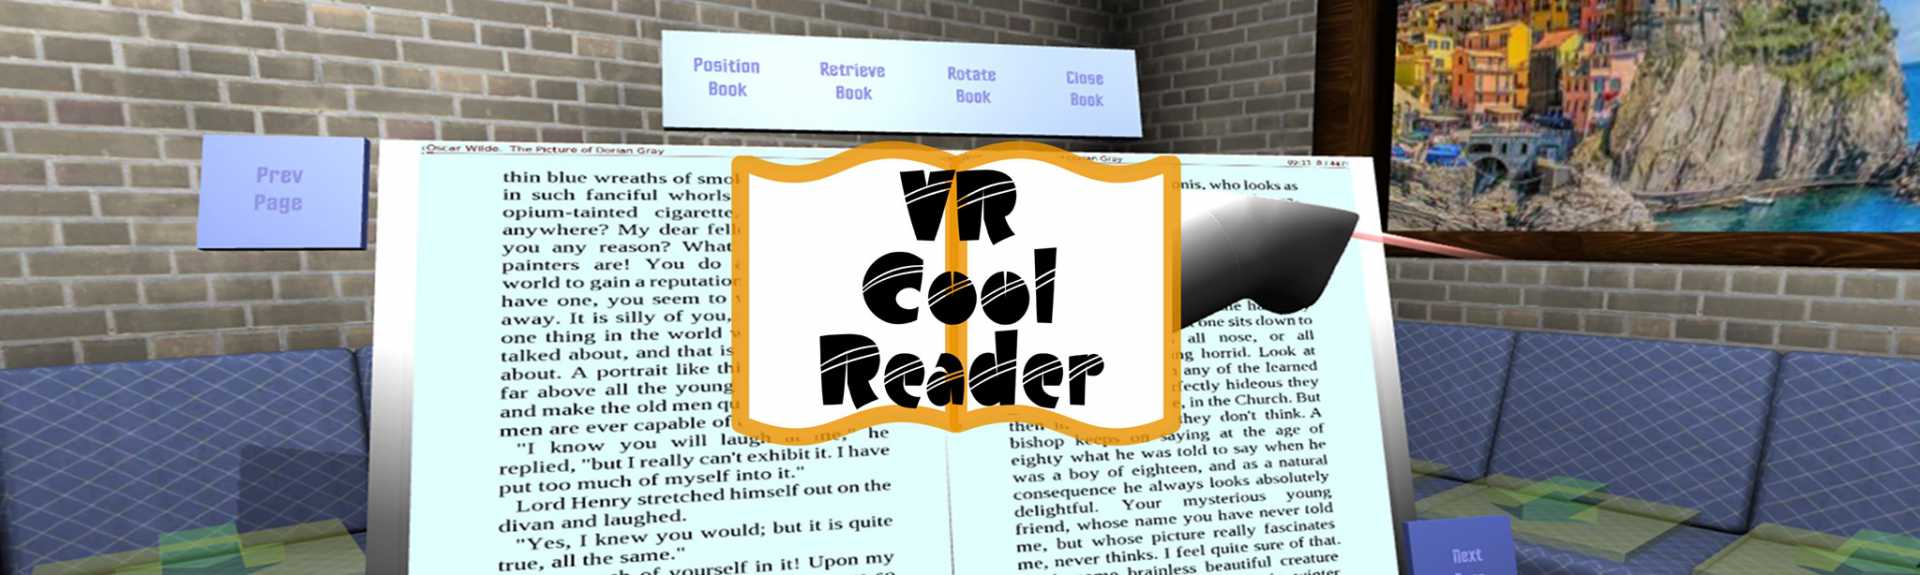 VR Cool Reader